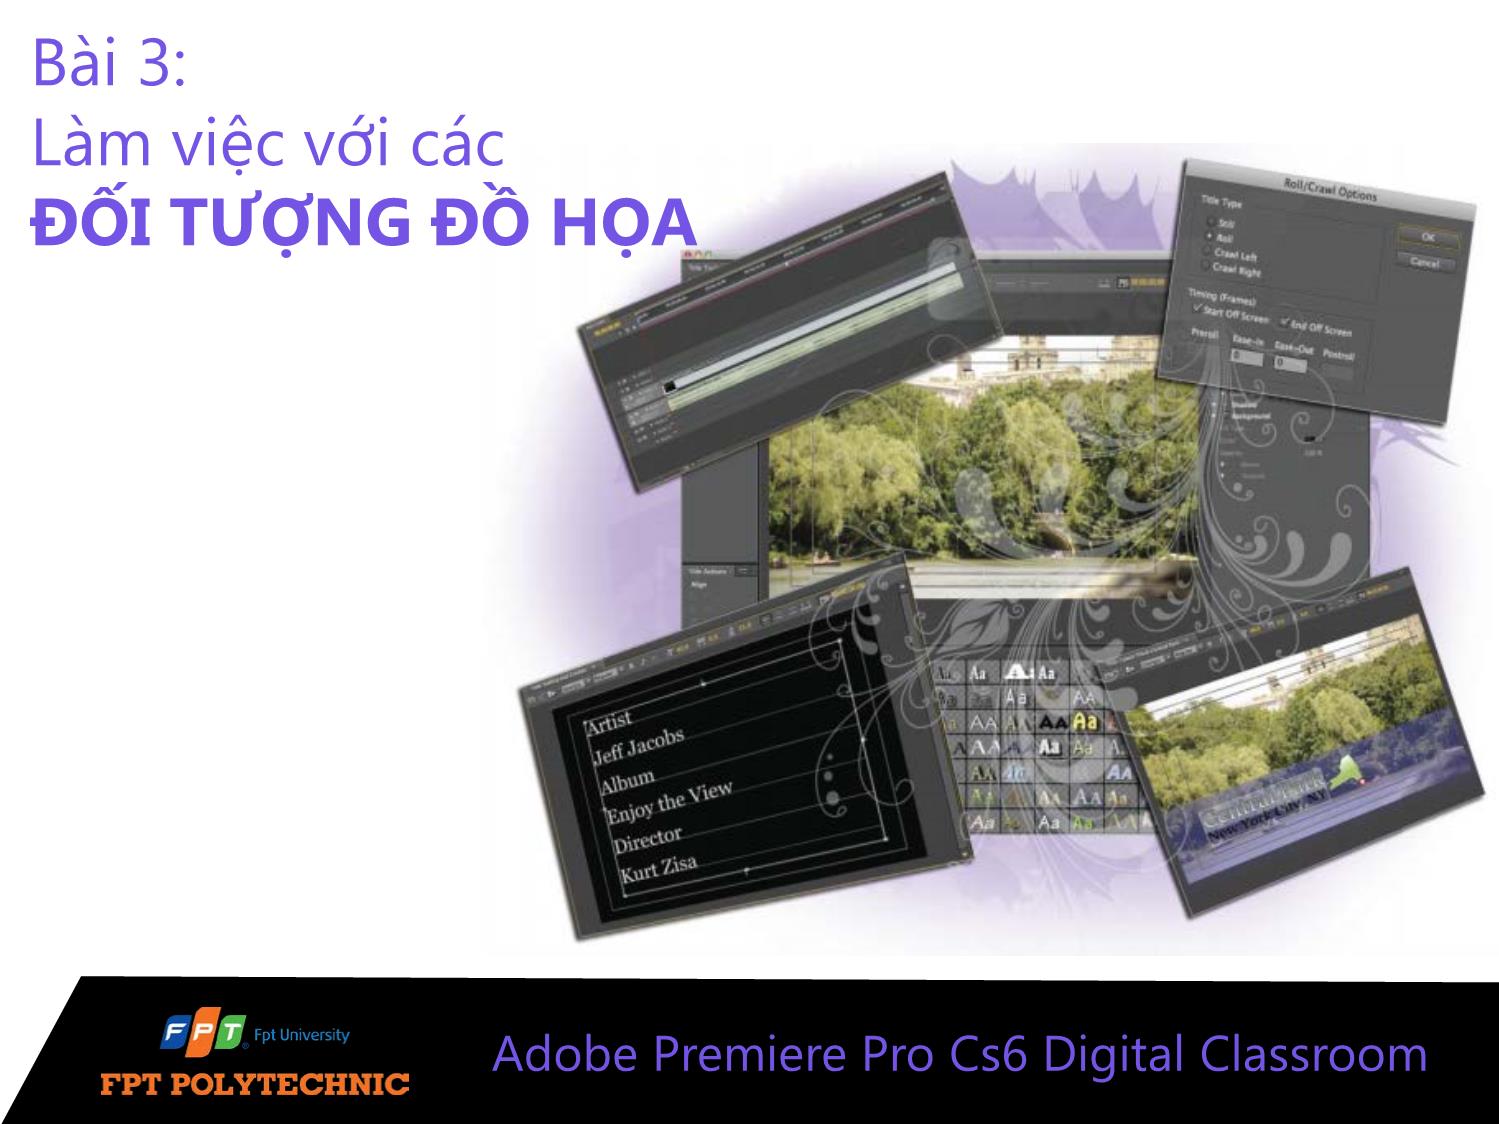 Bài giảng Xử lý hậu kỳ với Adobe Premiere Pro Cs6 - Bài 3: Làm việc với các đối tượng đồ họa trang 1